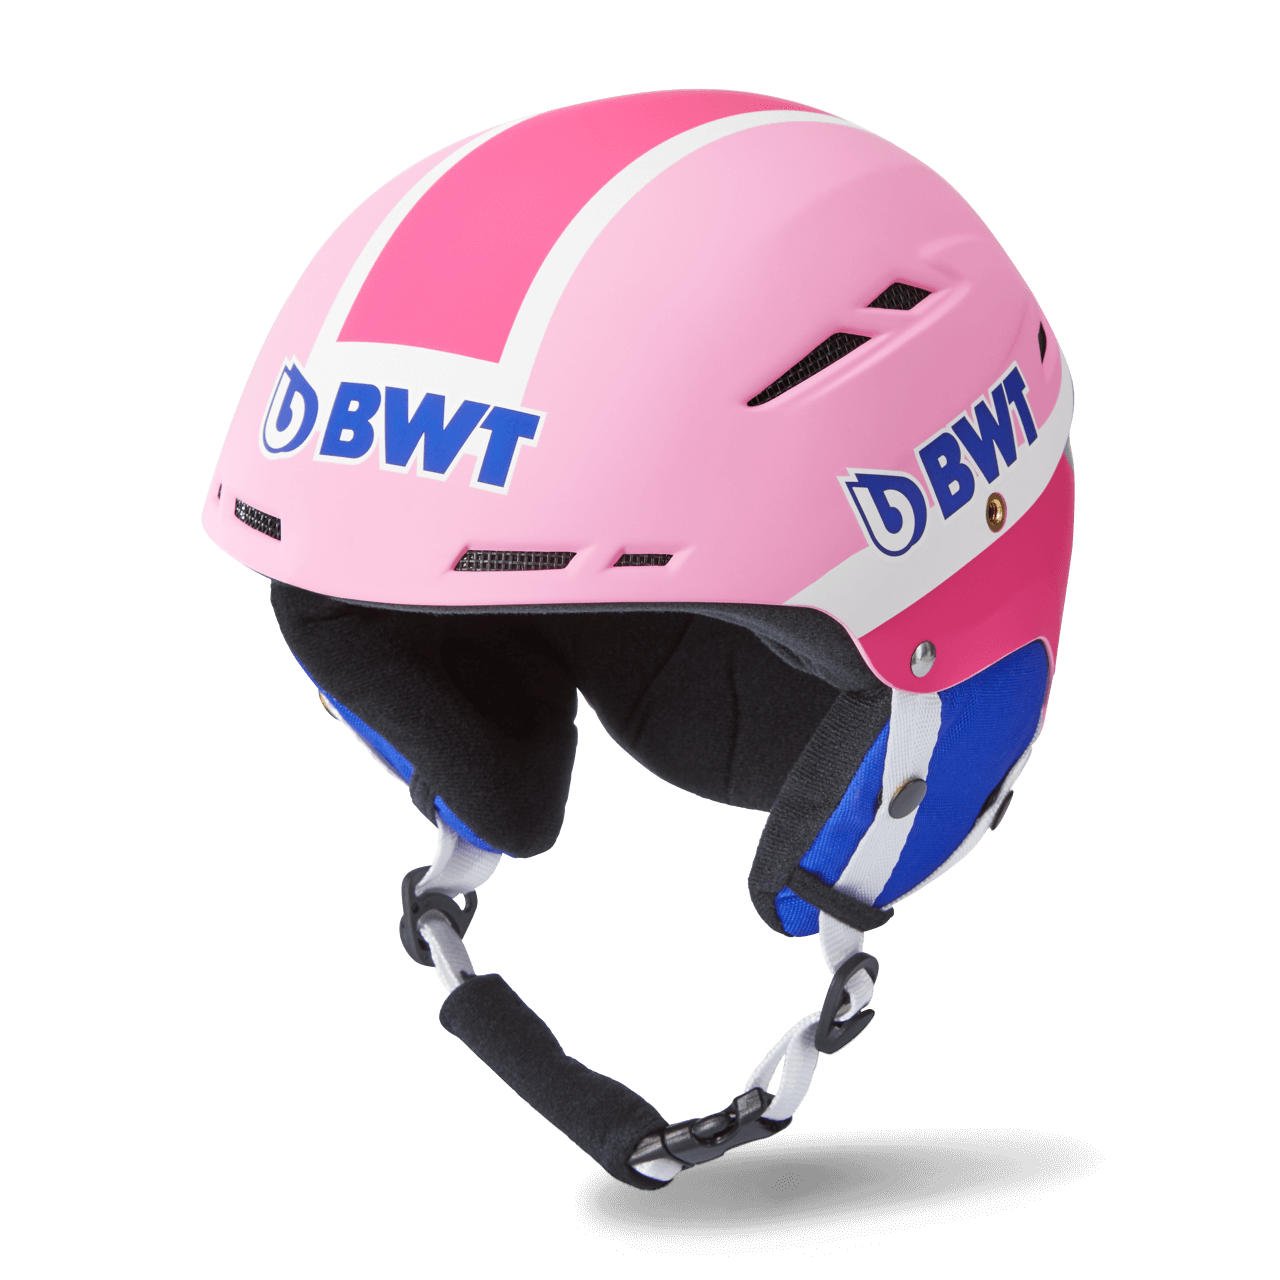 Casco da sci BWT Freeride in rosa con logo BWT blu